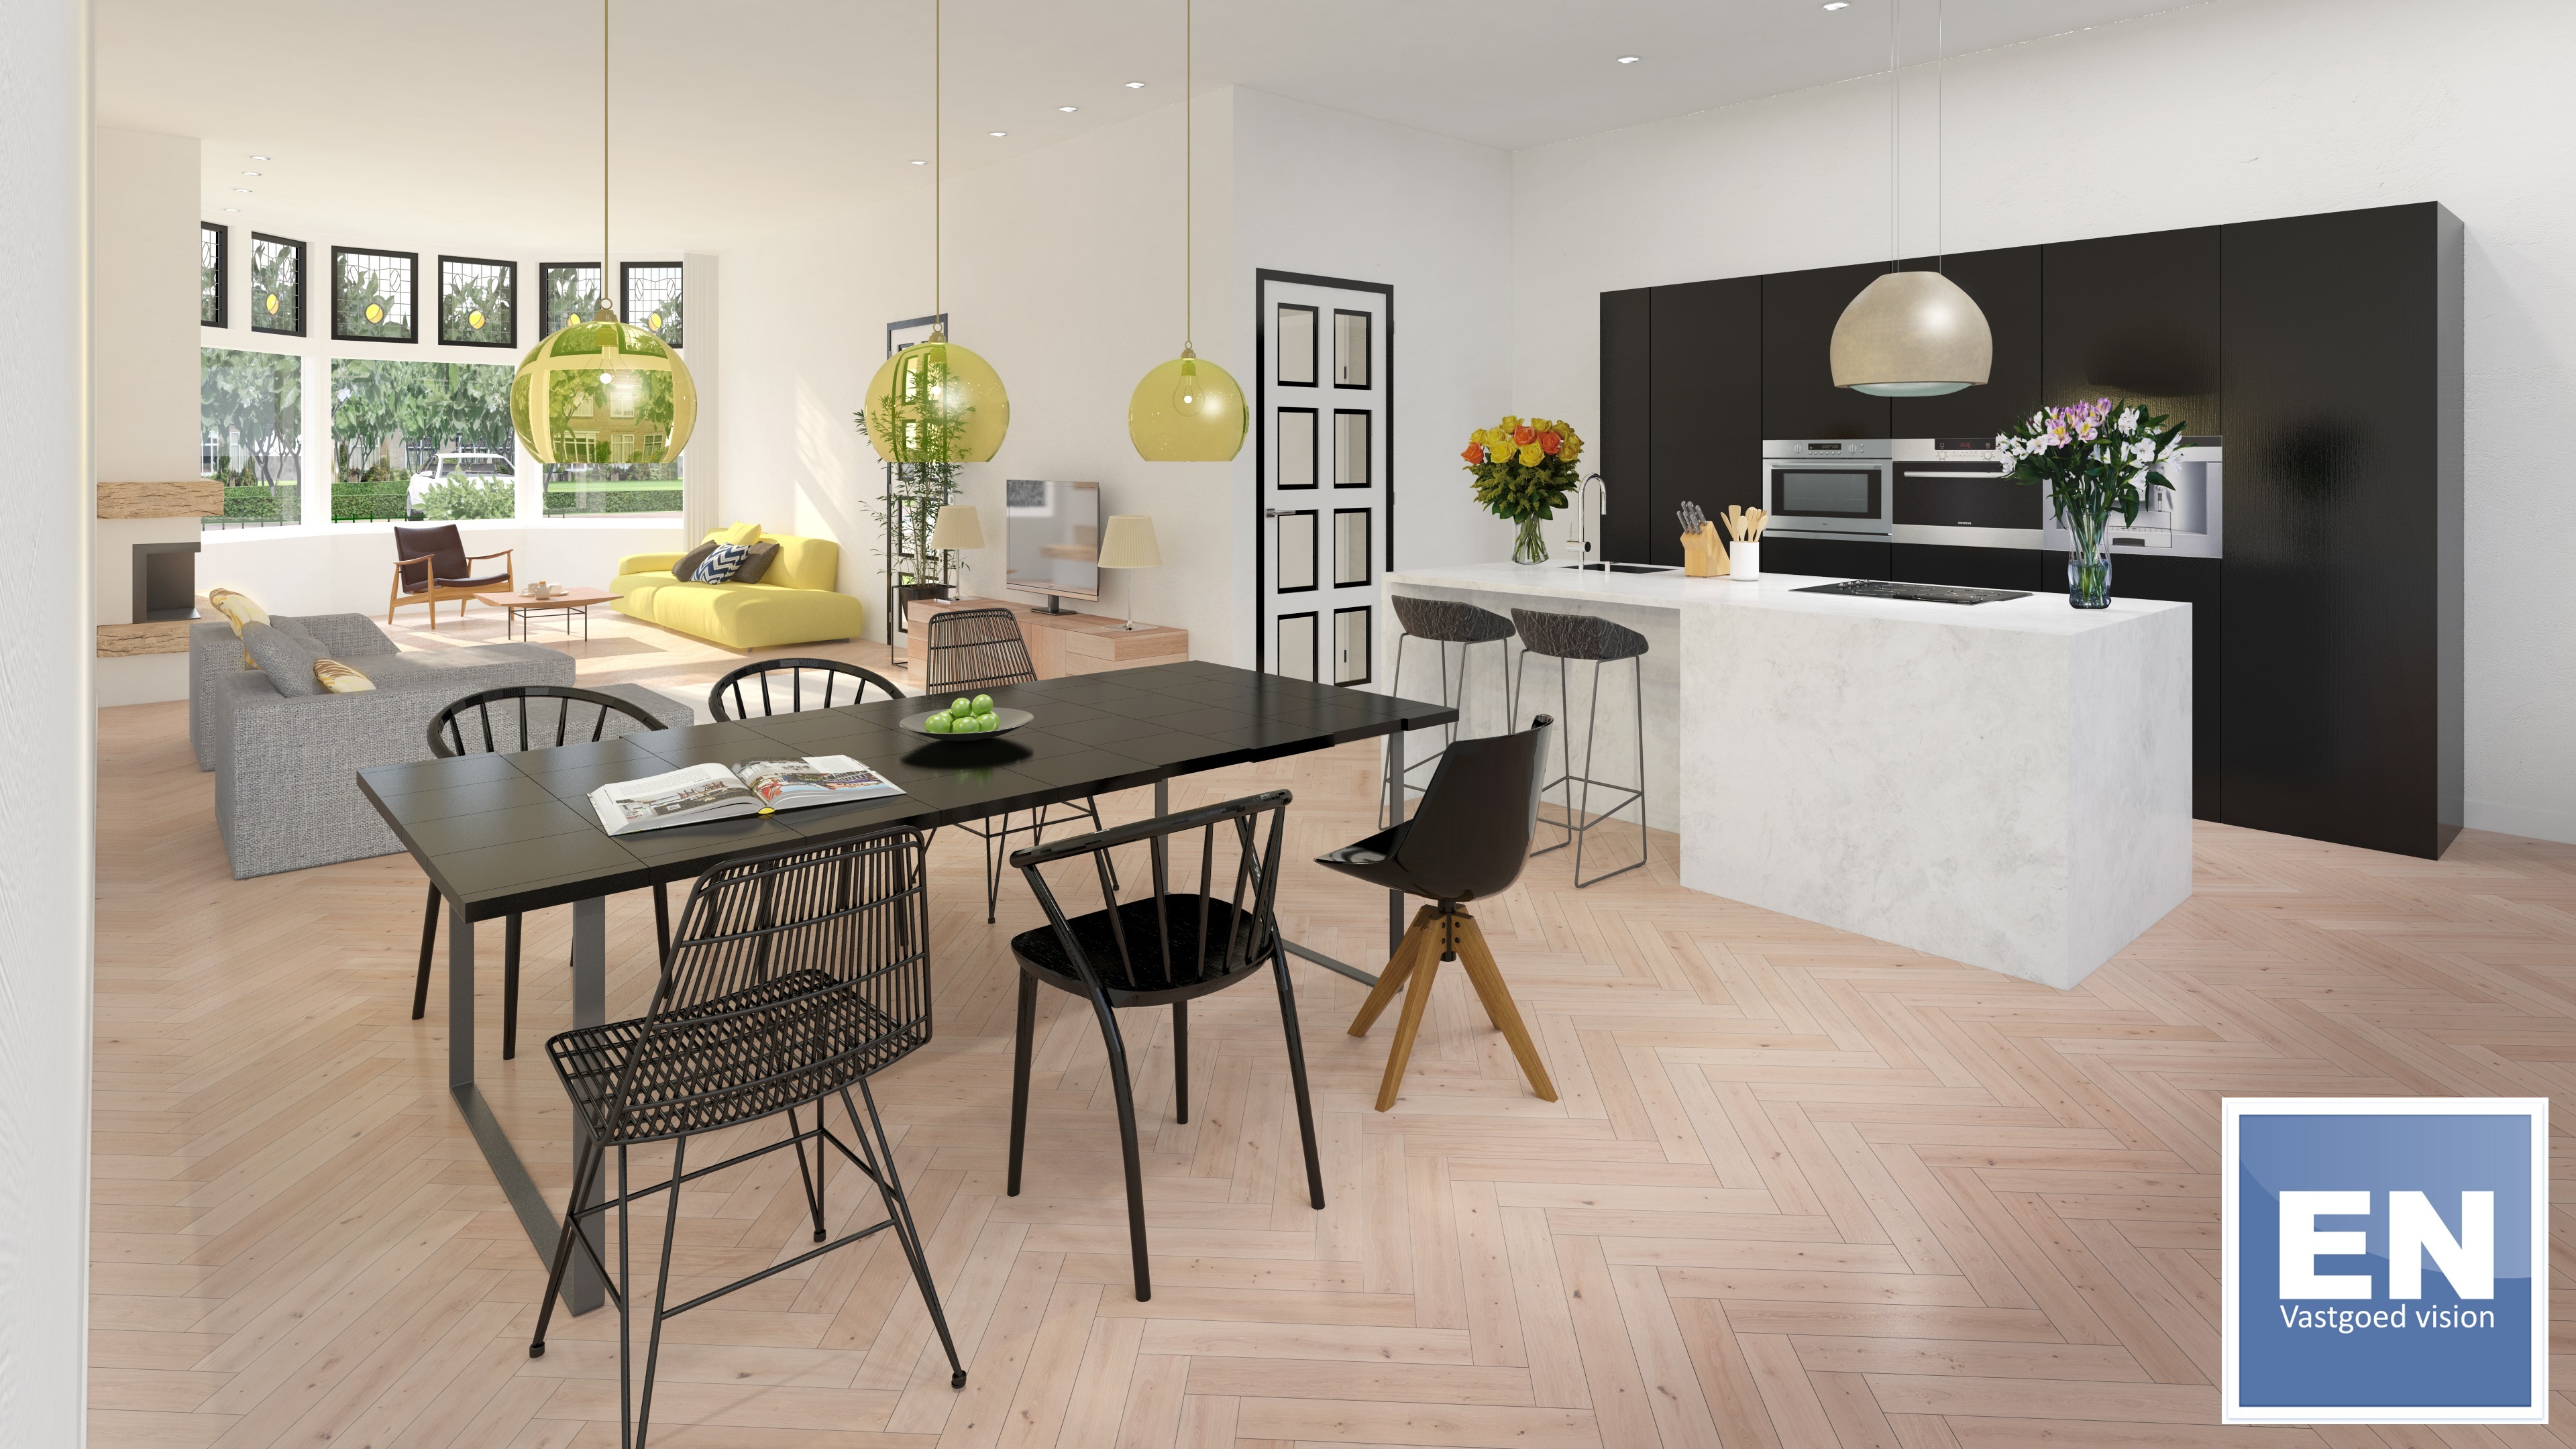 EN Vastgoed - HD Artist interieur Impression woonkamer en keuken.jpg